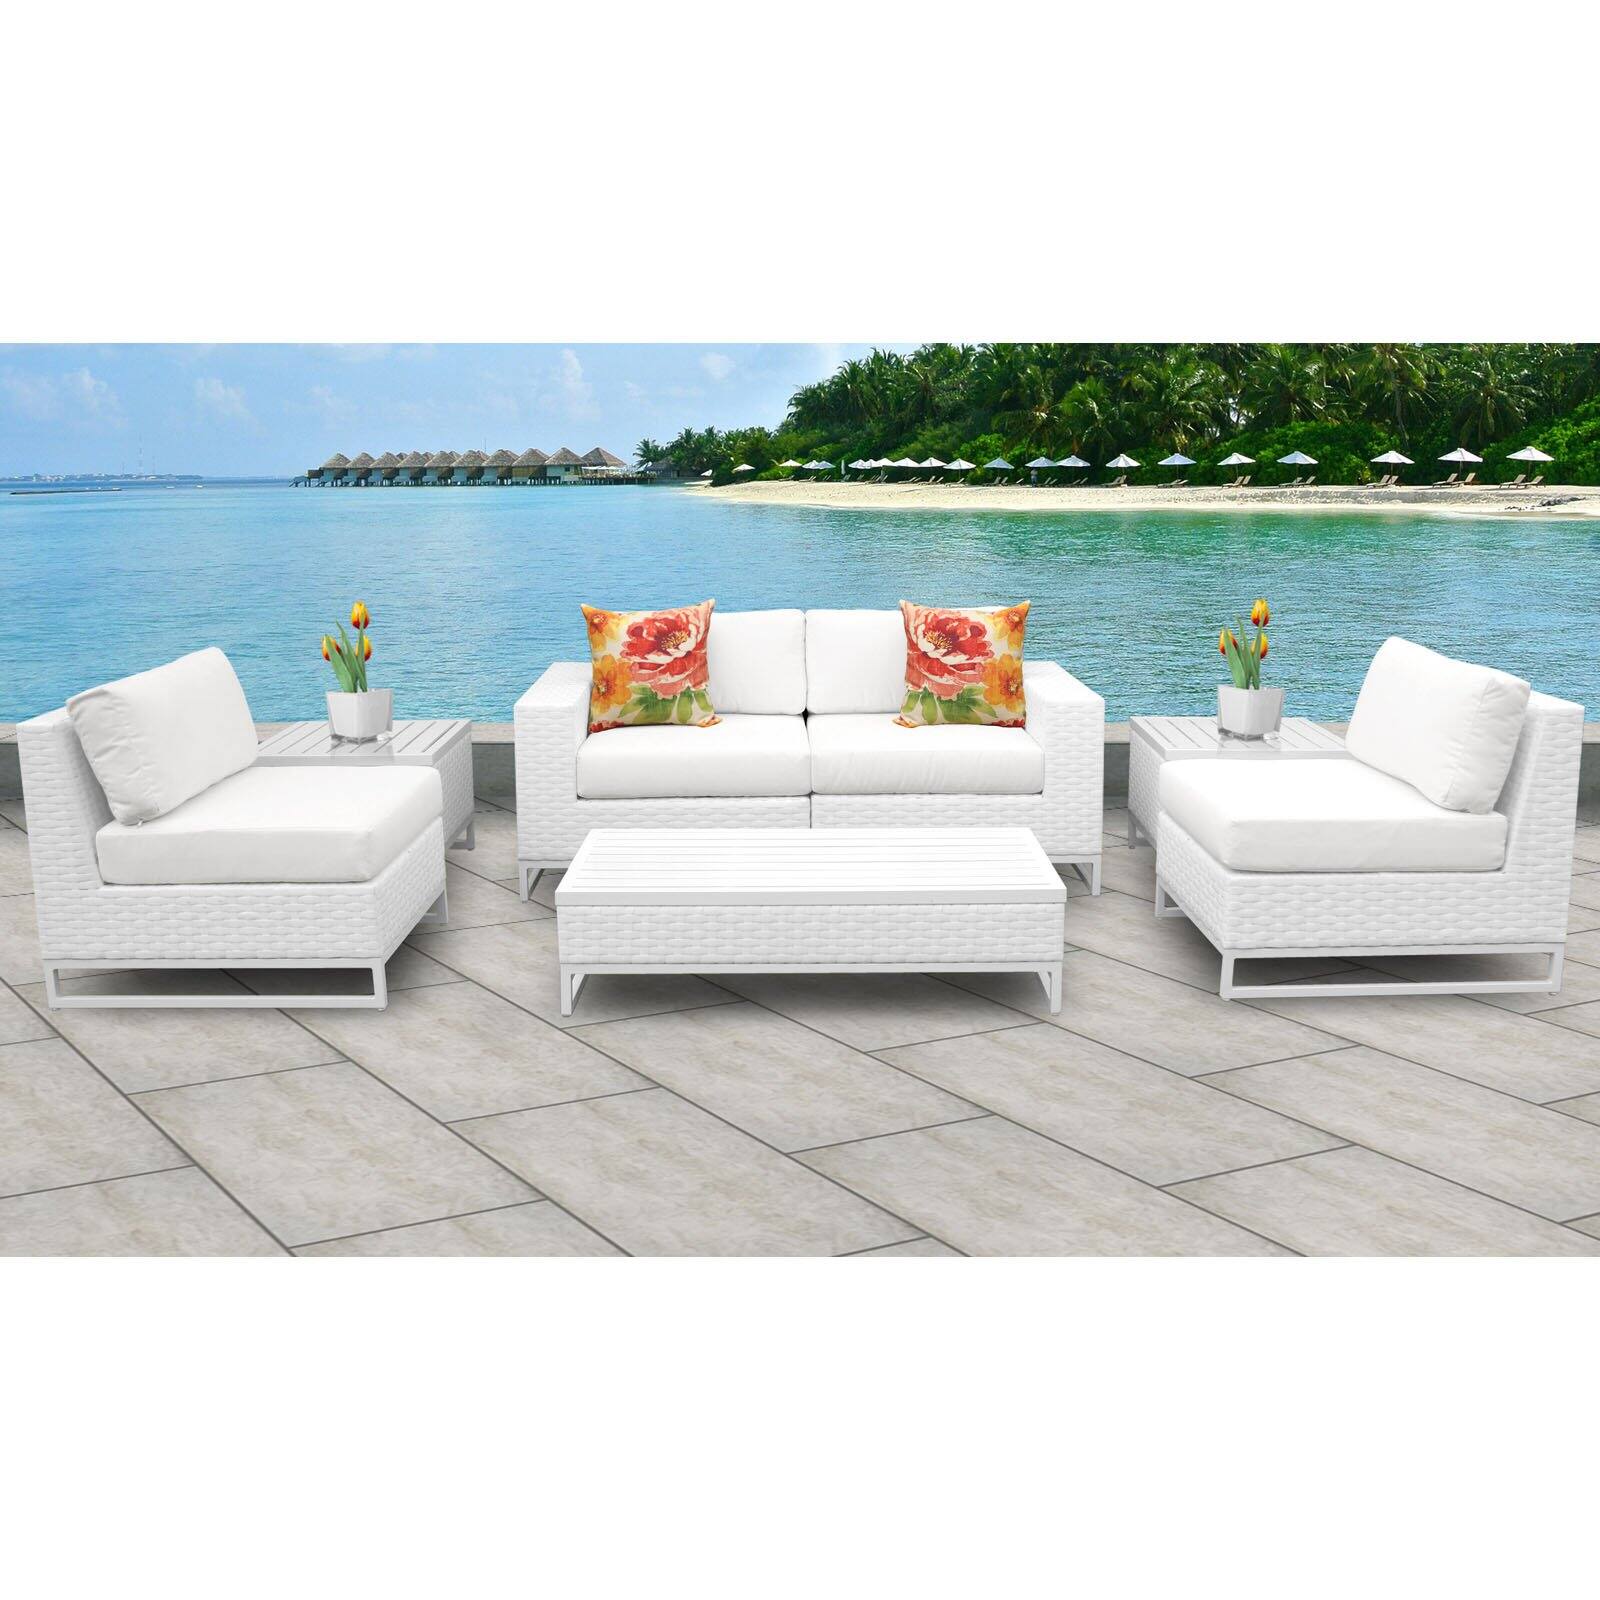 TK Classics Miami 7 Piece Outdoor Wicker Patio Furniture Set 07e - image 3 of 3